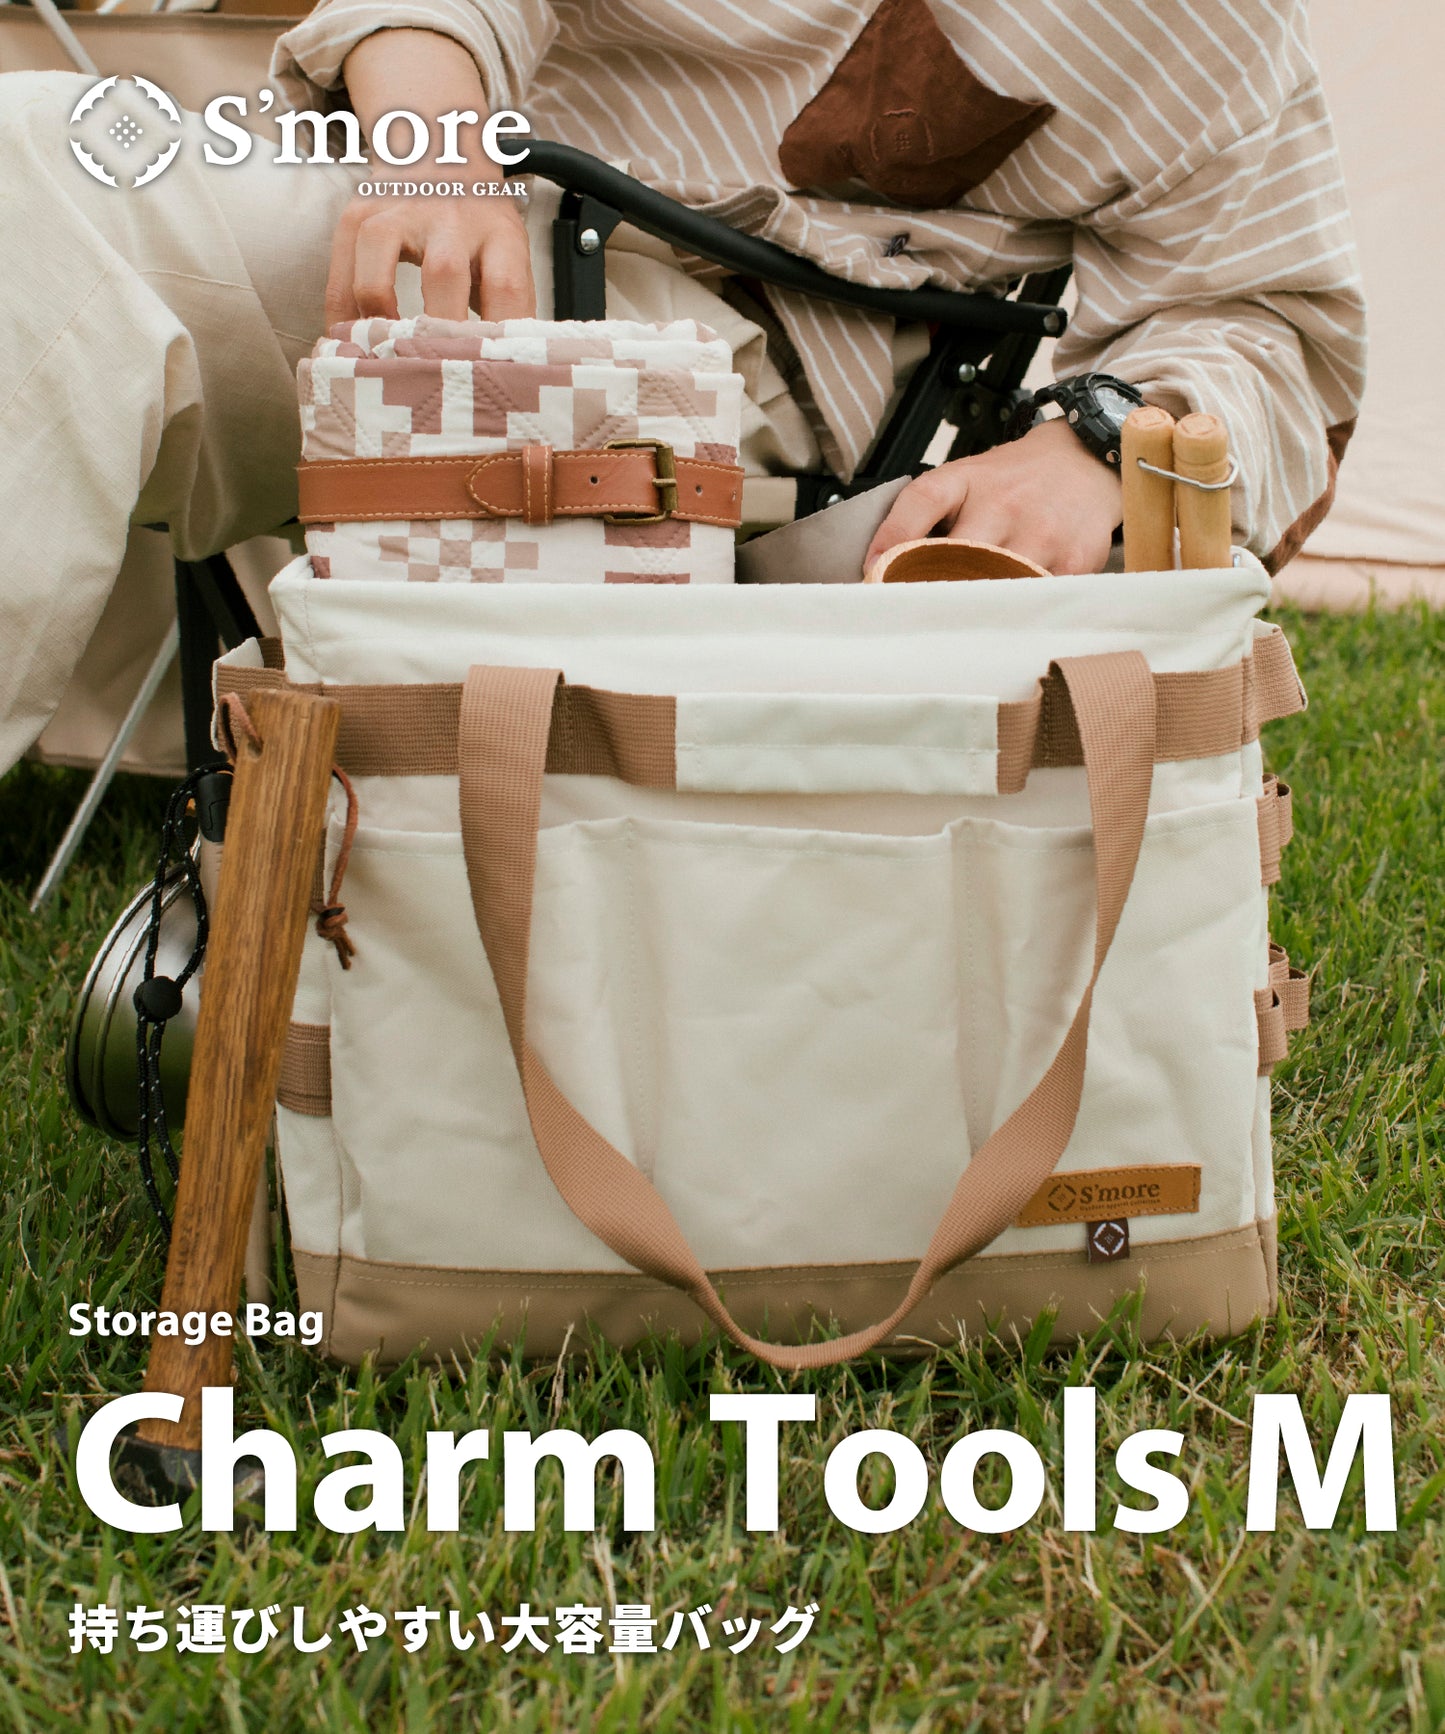 【 Charm Tools M 】チャームツールM 深さがあり豊富なループ